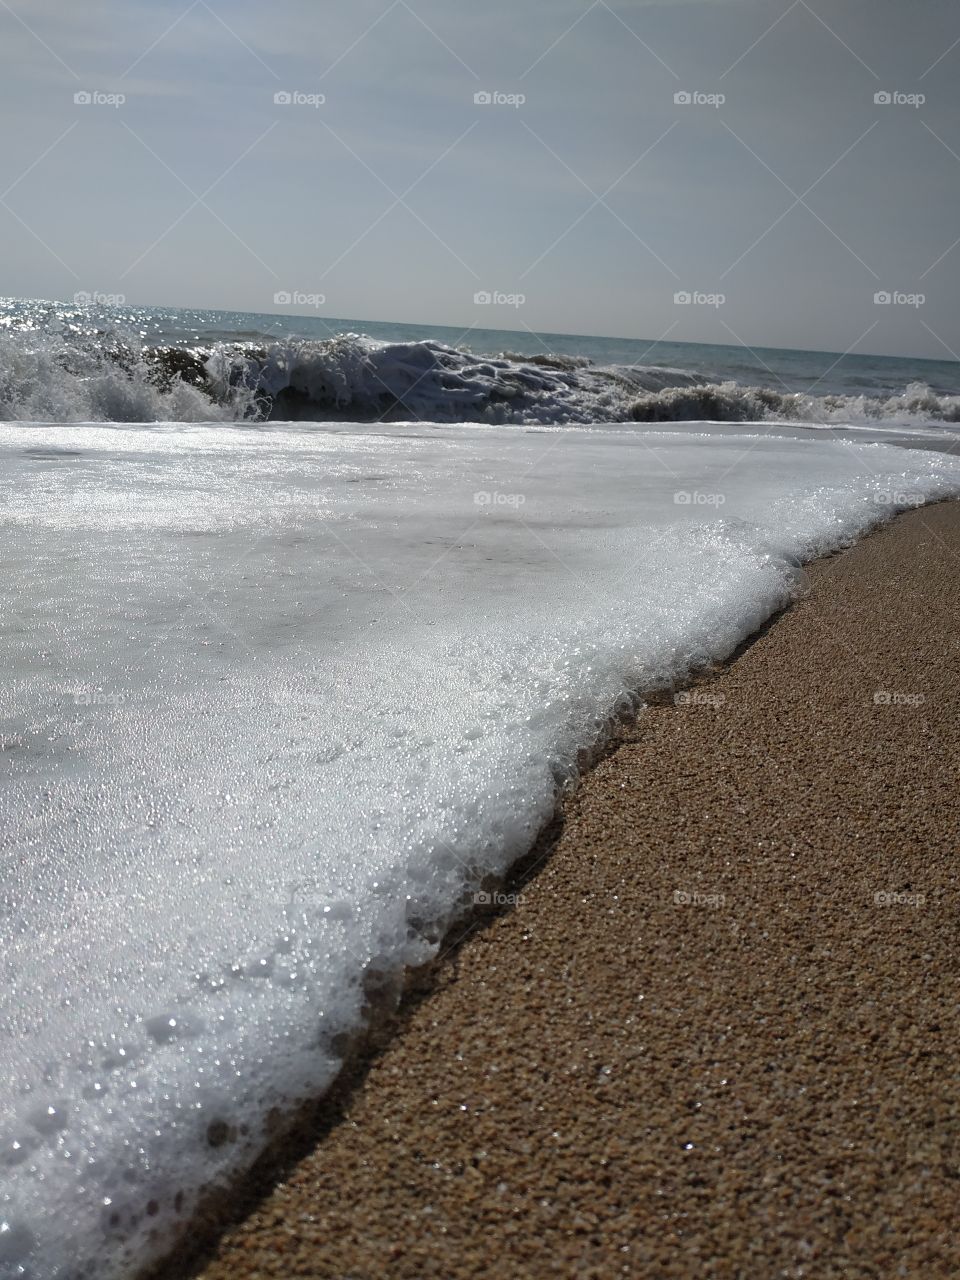 Espuma sobre piedra fina, fotografía tomada en la playa de Peñiscola. La espuma de vuelta al mar me llamó la atención.